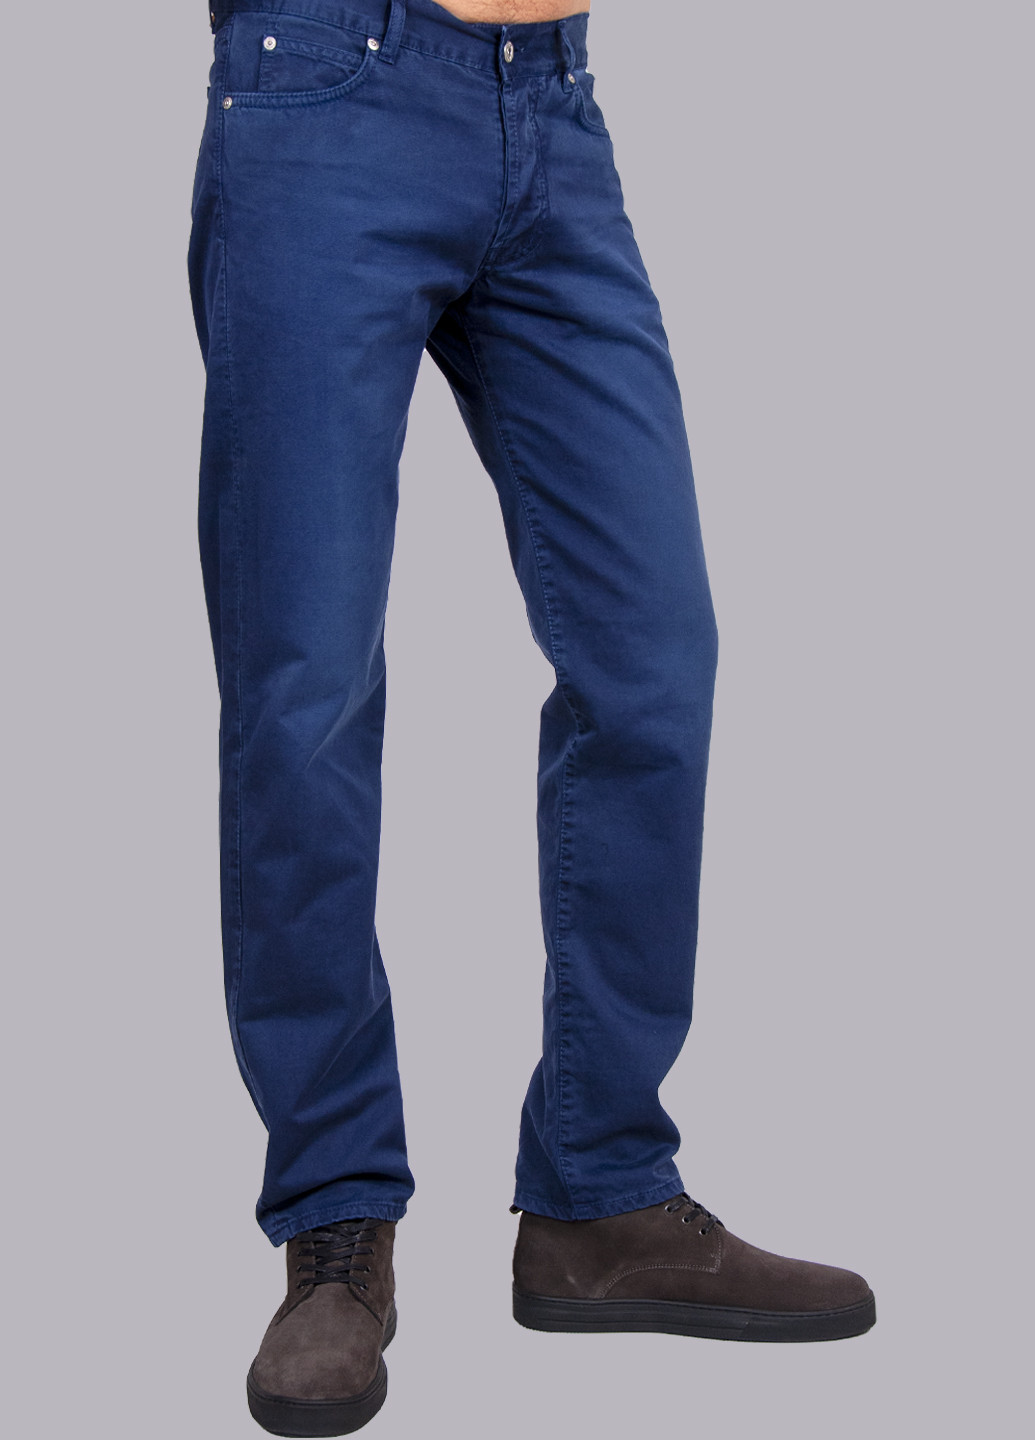 Синие демисезонные джинсы Roy Rogers